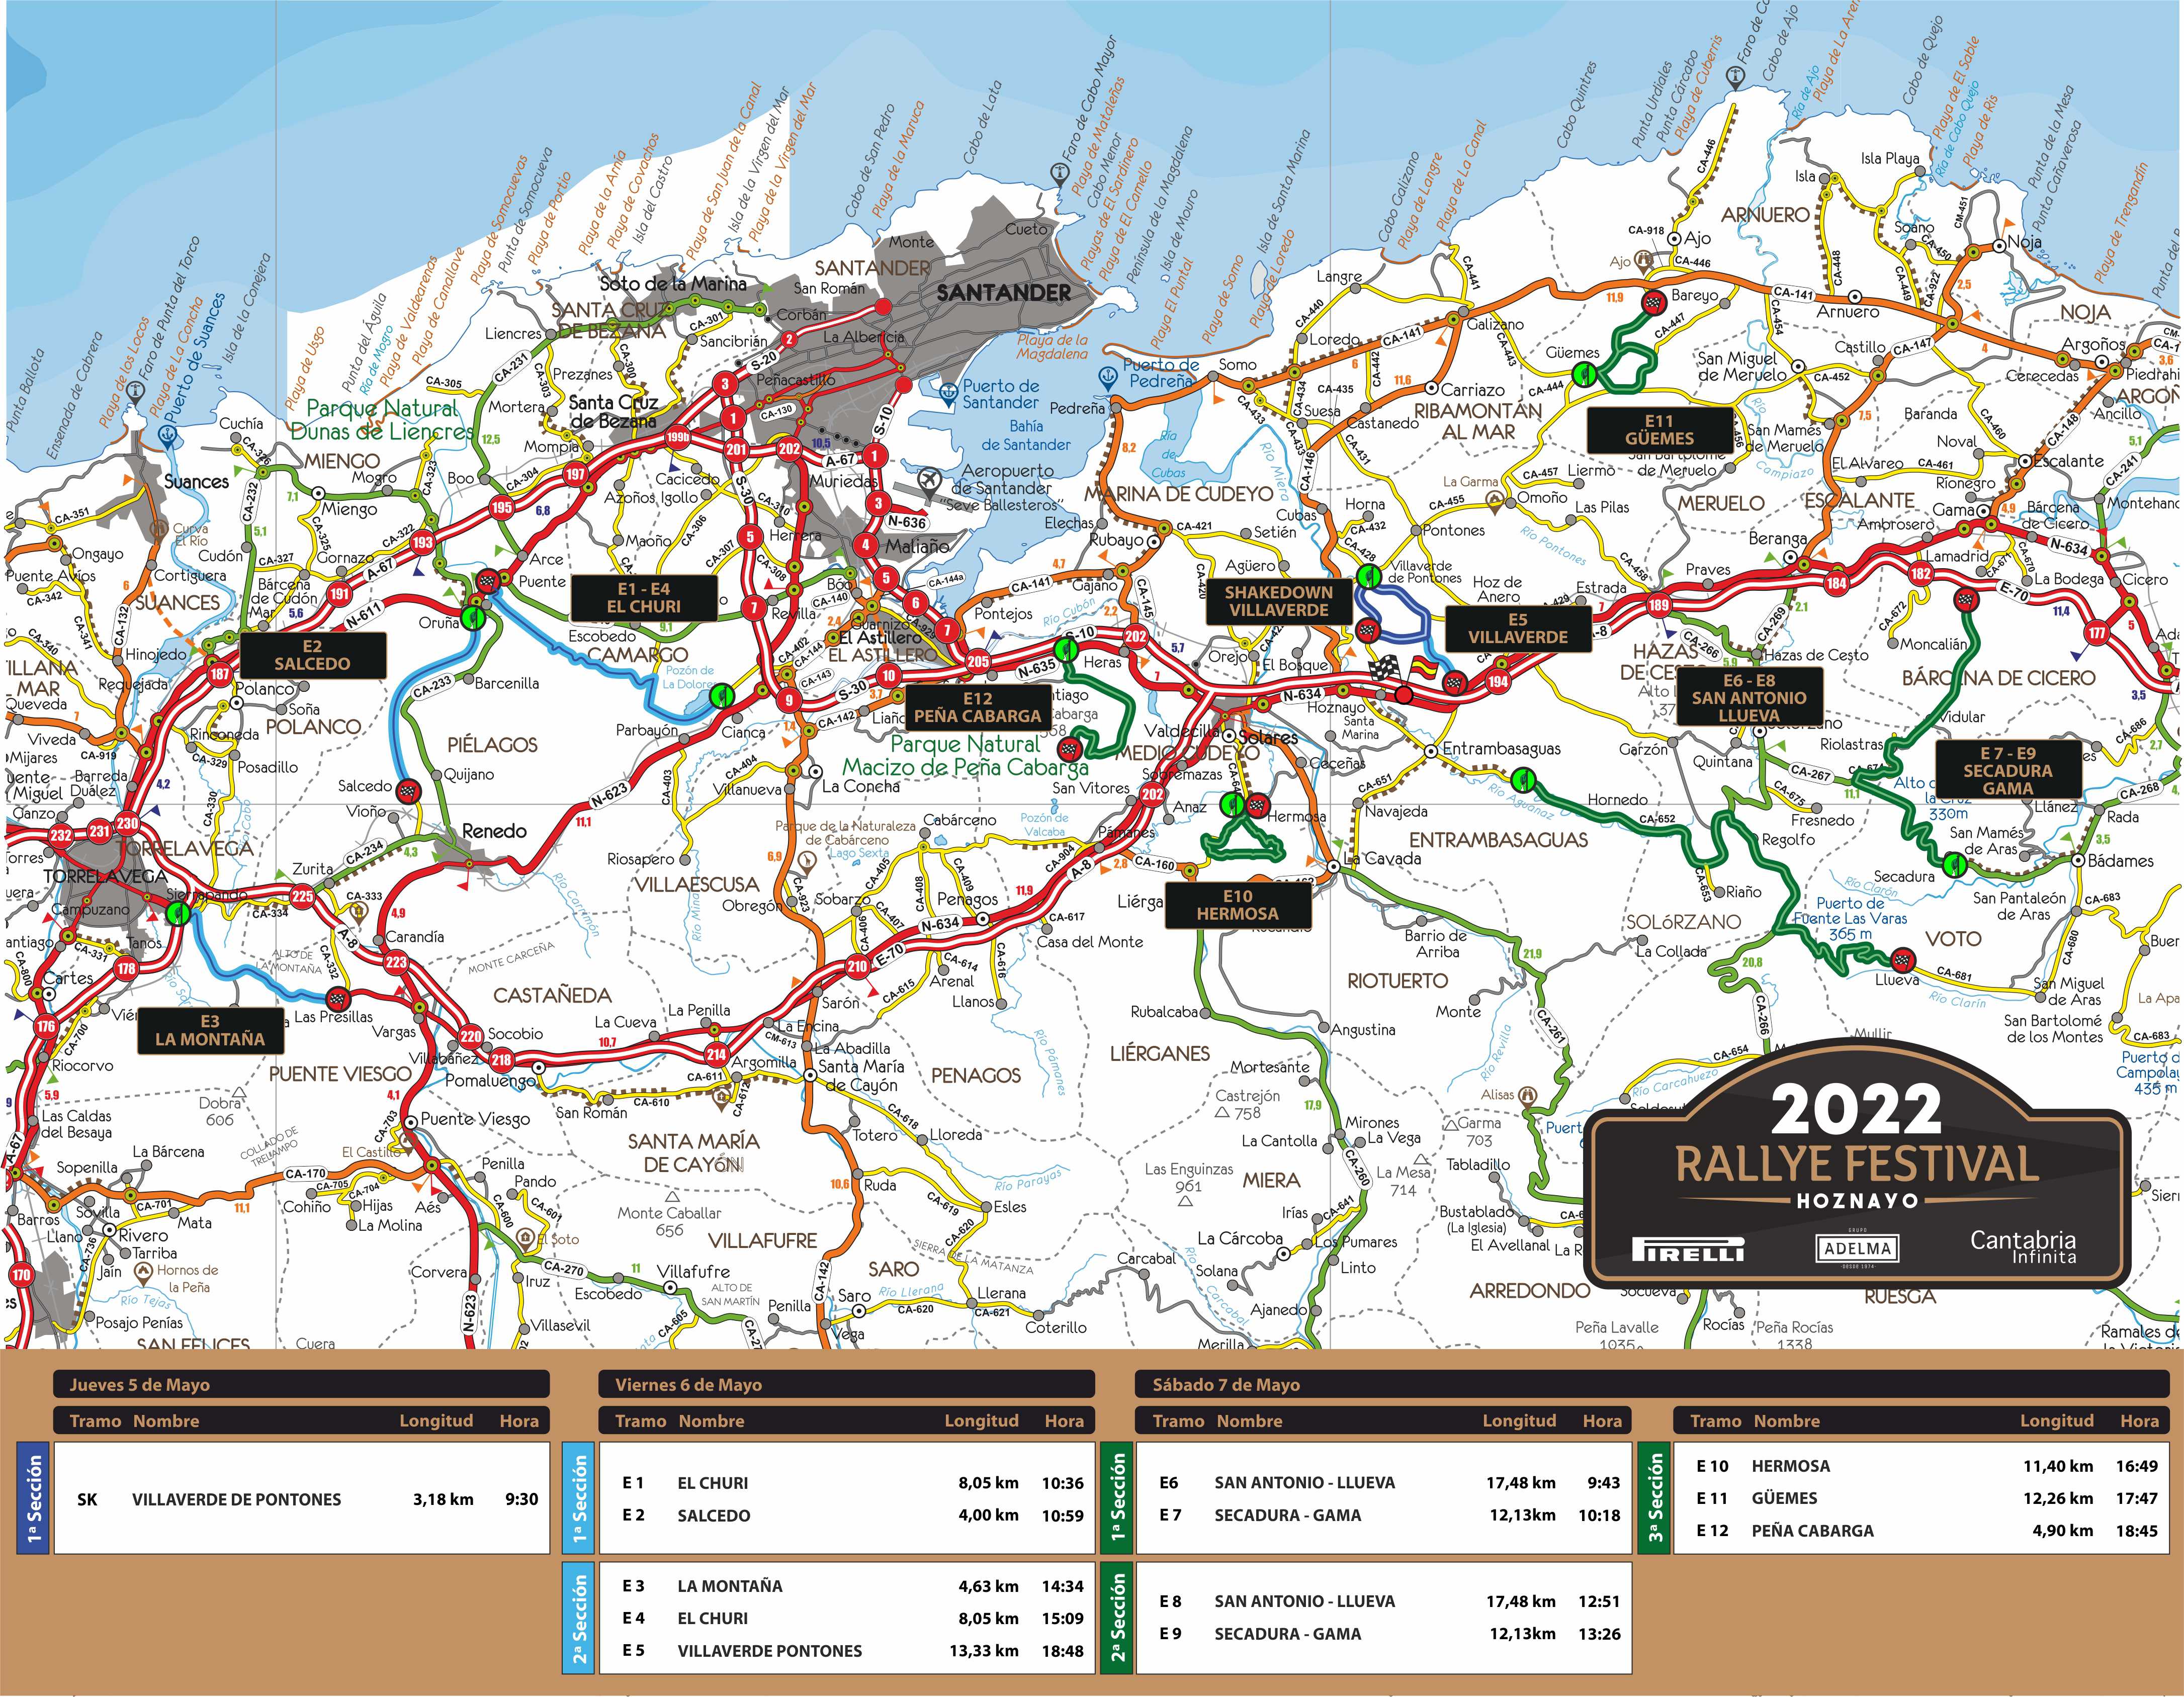 Rallye Festival Hoznayo 2022 [5-7 Mayo] Mapa